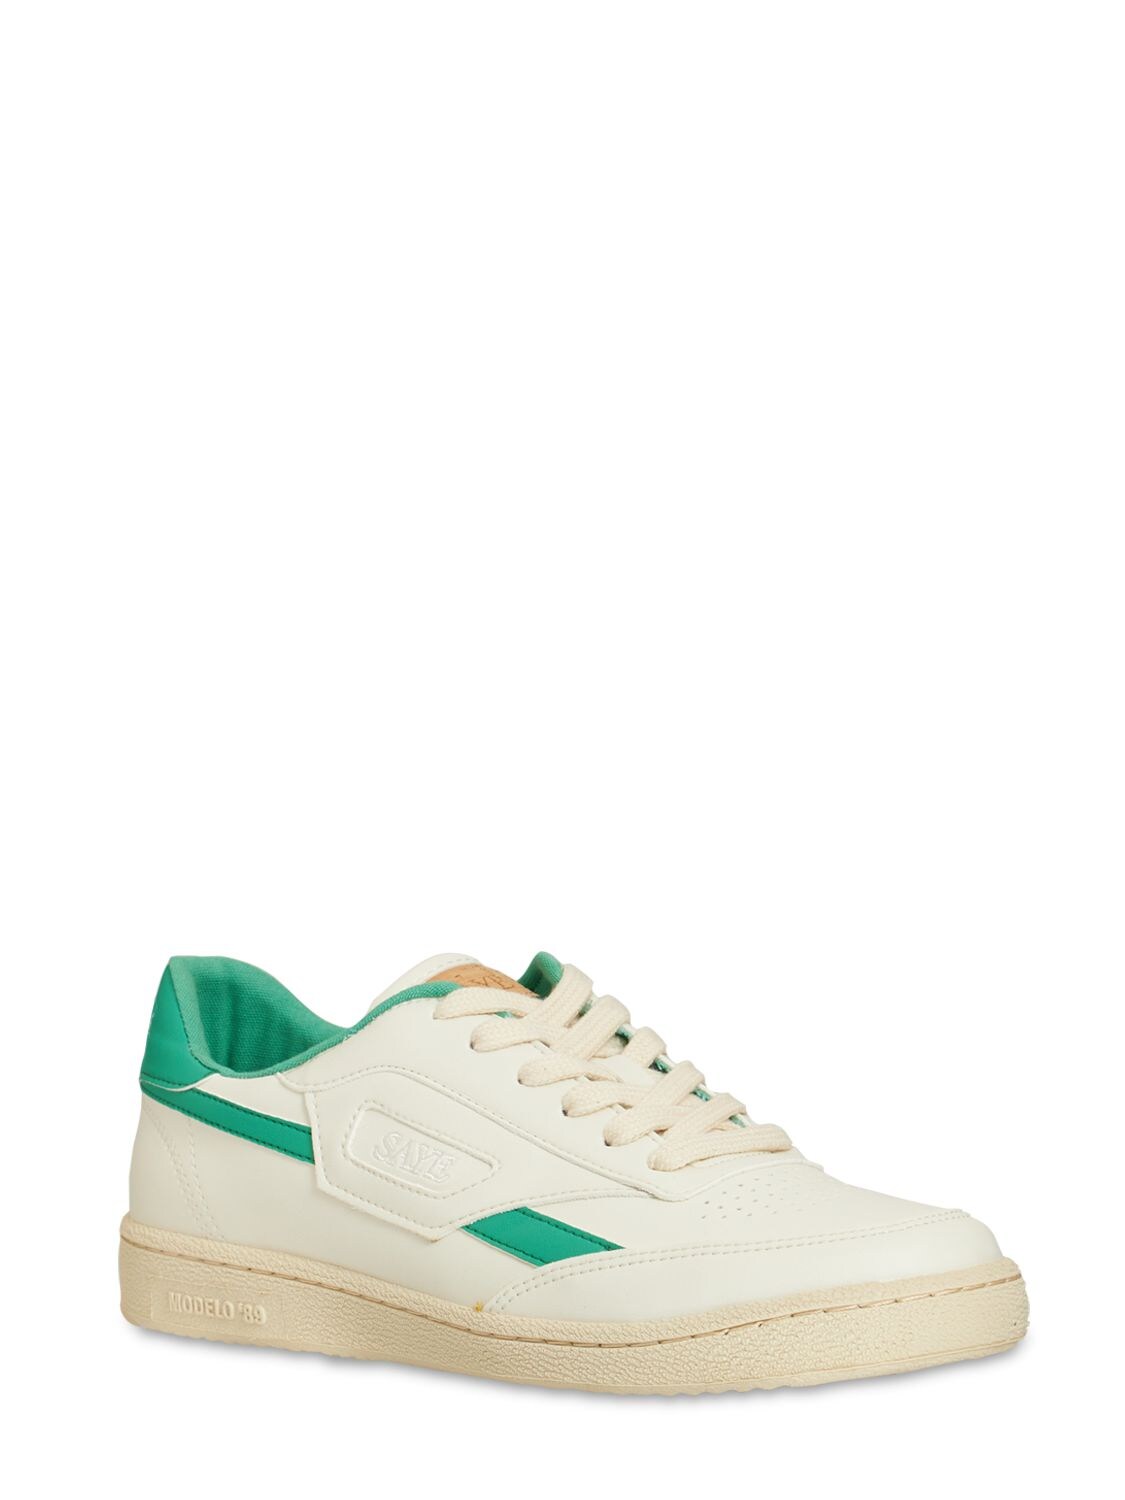 Modelo '89 Green - Vegan Sneakers - SAYE